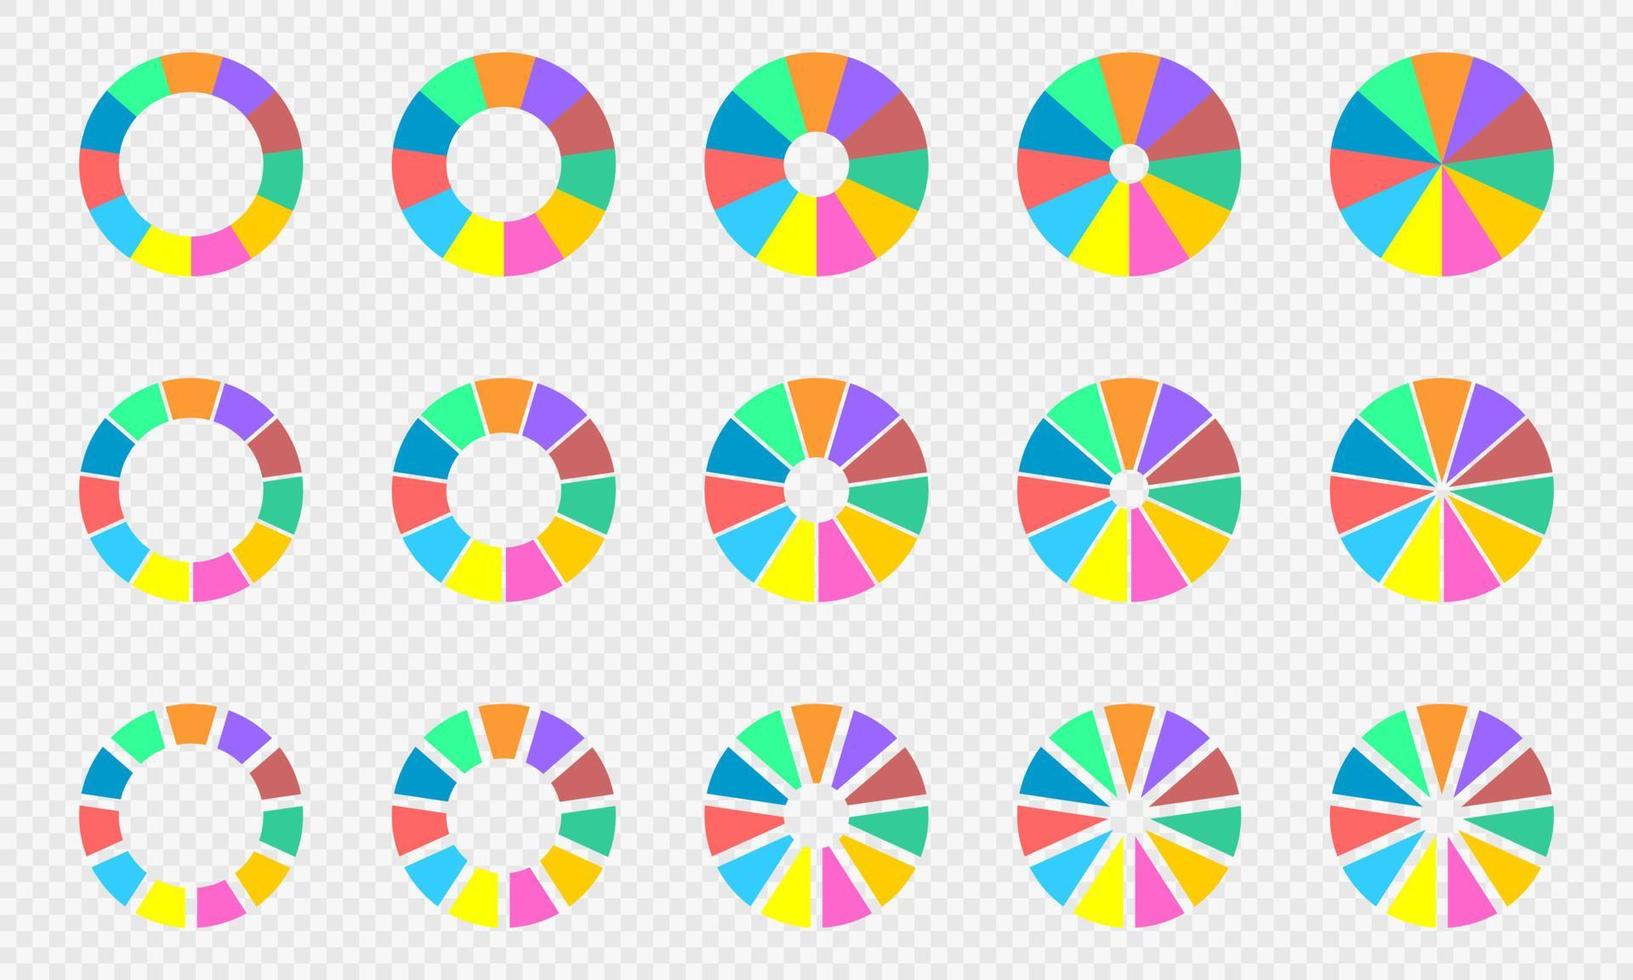 taart en donut grafieken set. kleurrijk cirkel diagrammen verdeeld in 11 secties. infographic wielen. ronde vormen besnoeiing in elf Gelijk onderdelen vector